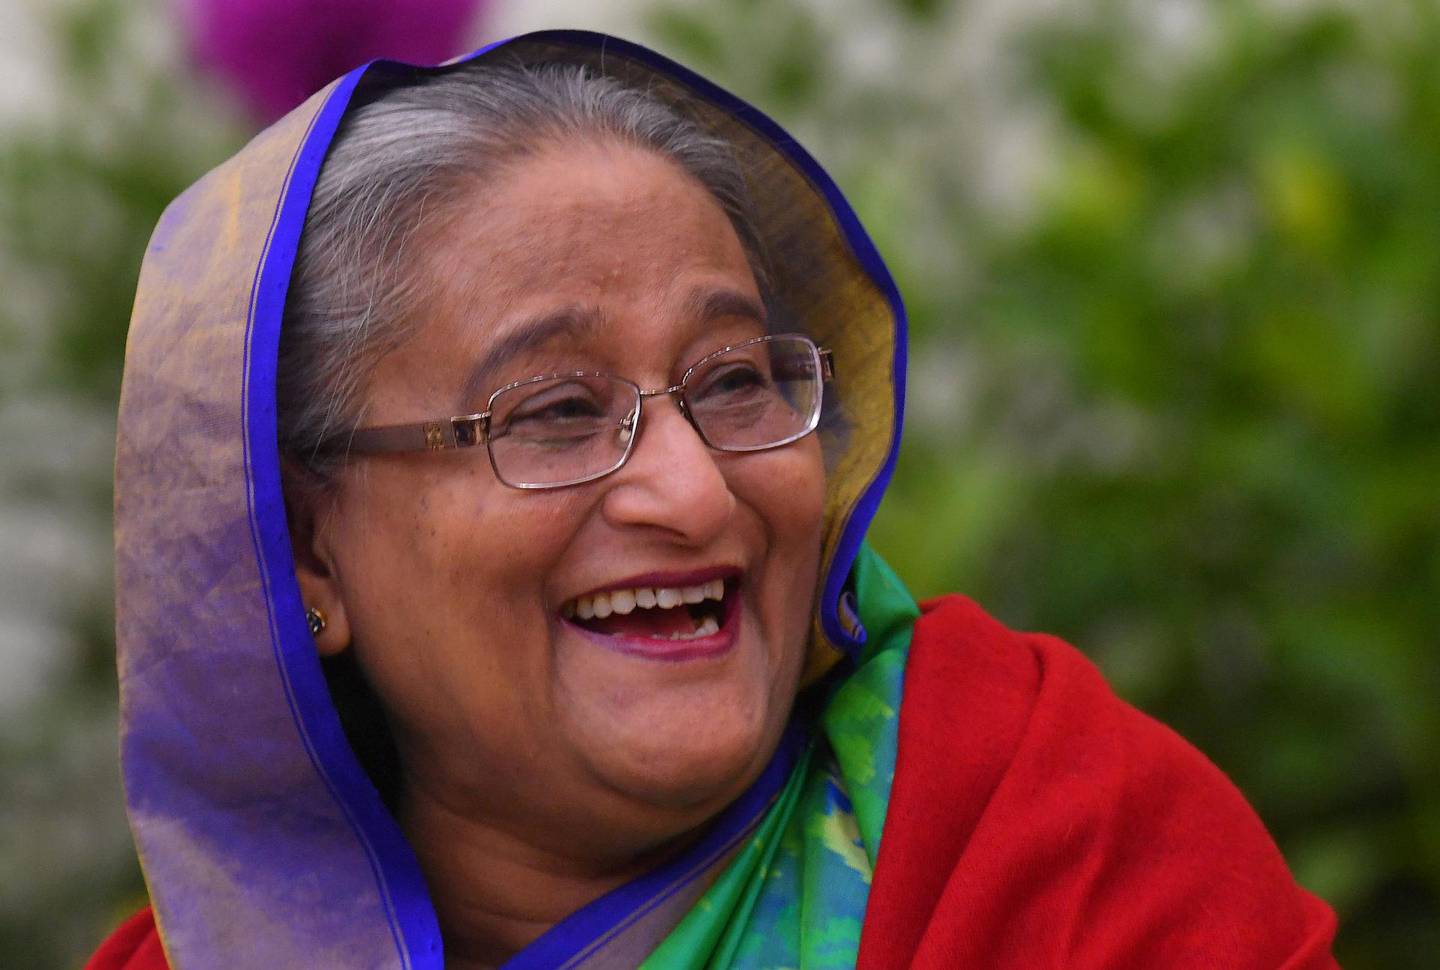 FORTSETTER: Sheikh Hasina har begynt sin tredje periode på rad som statsminister etter å ha blitt tatt i ed mandag. FOTO: NTB SCANPIX